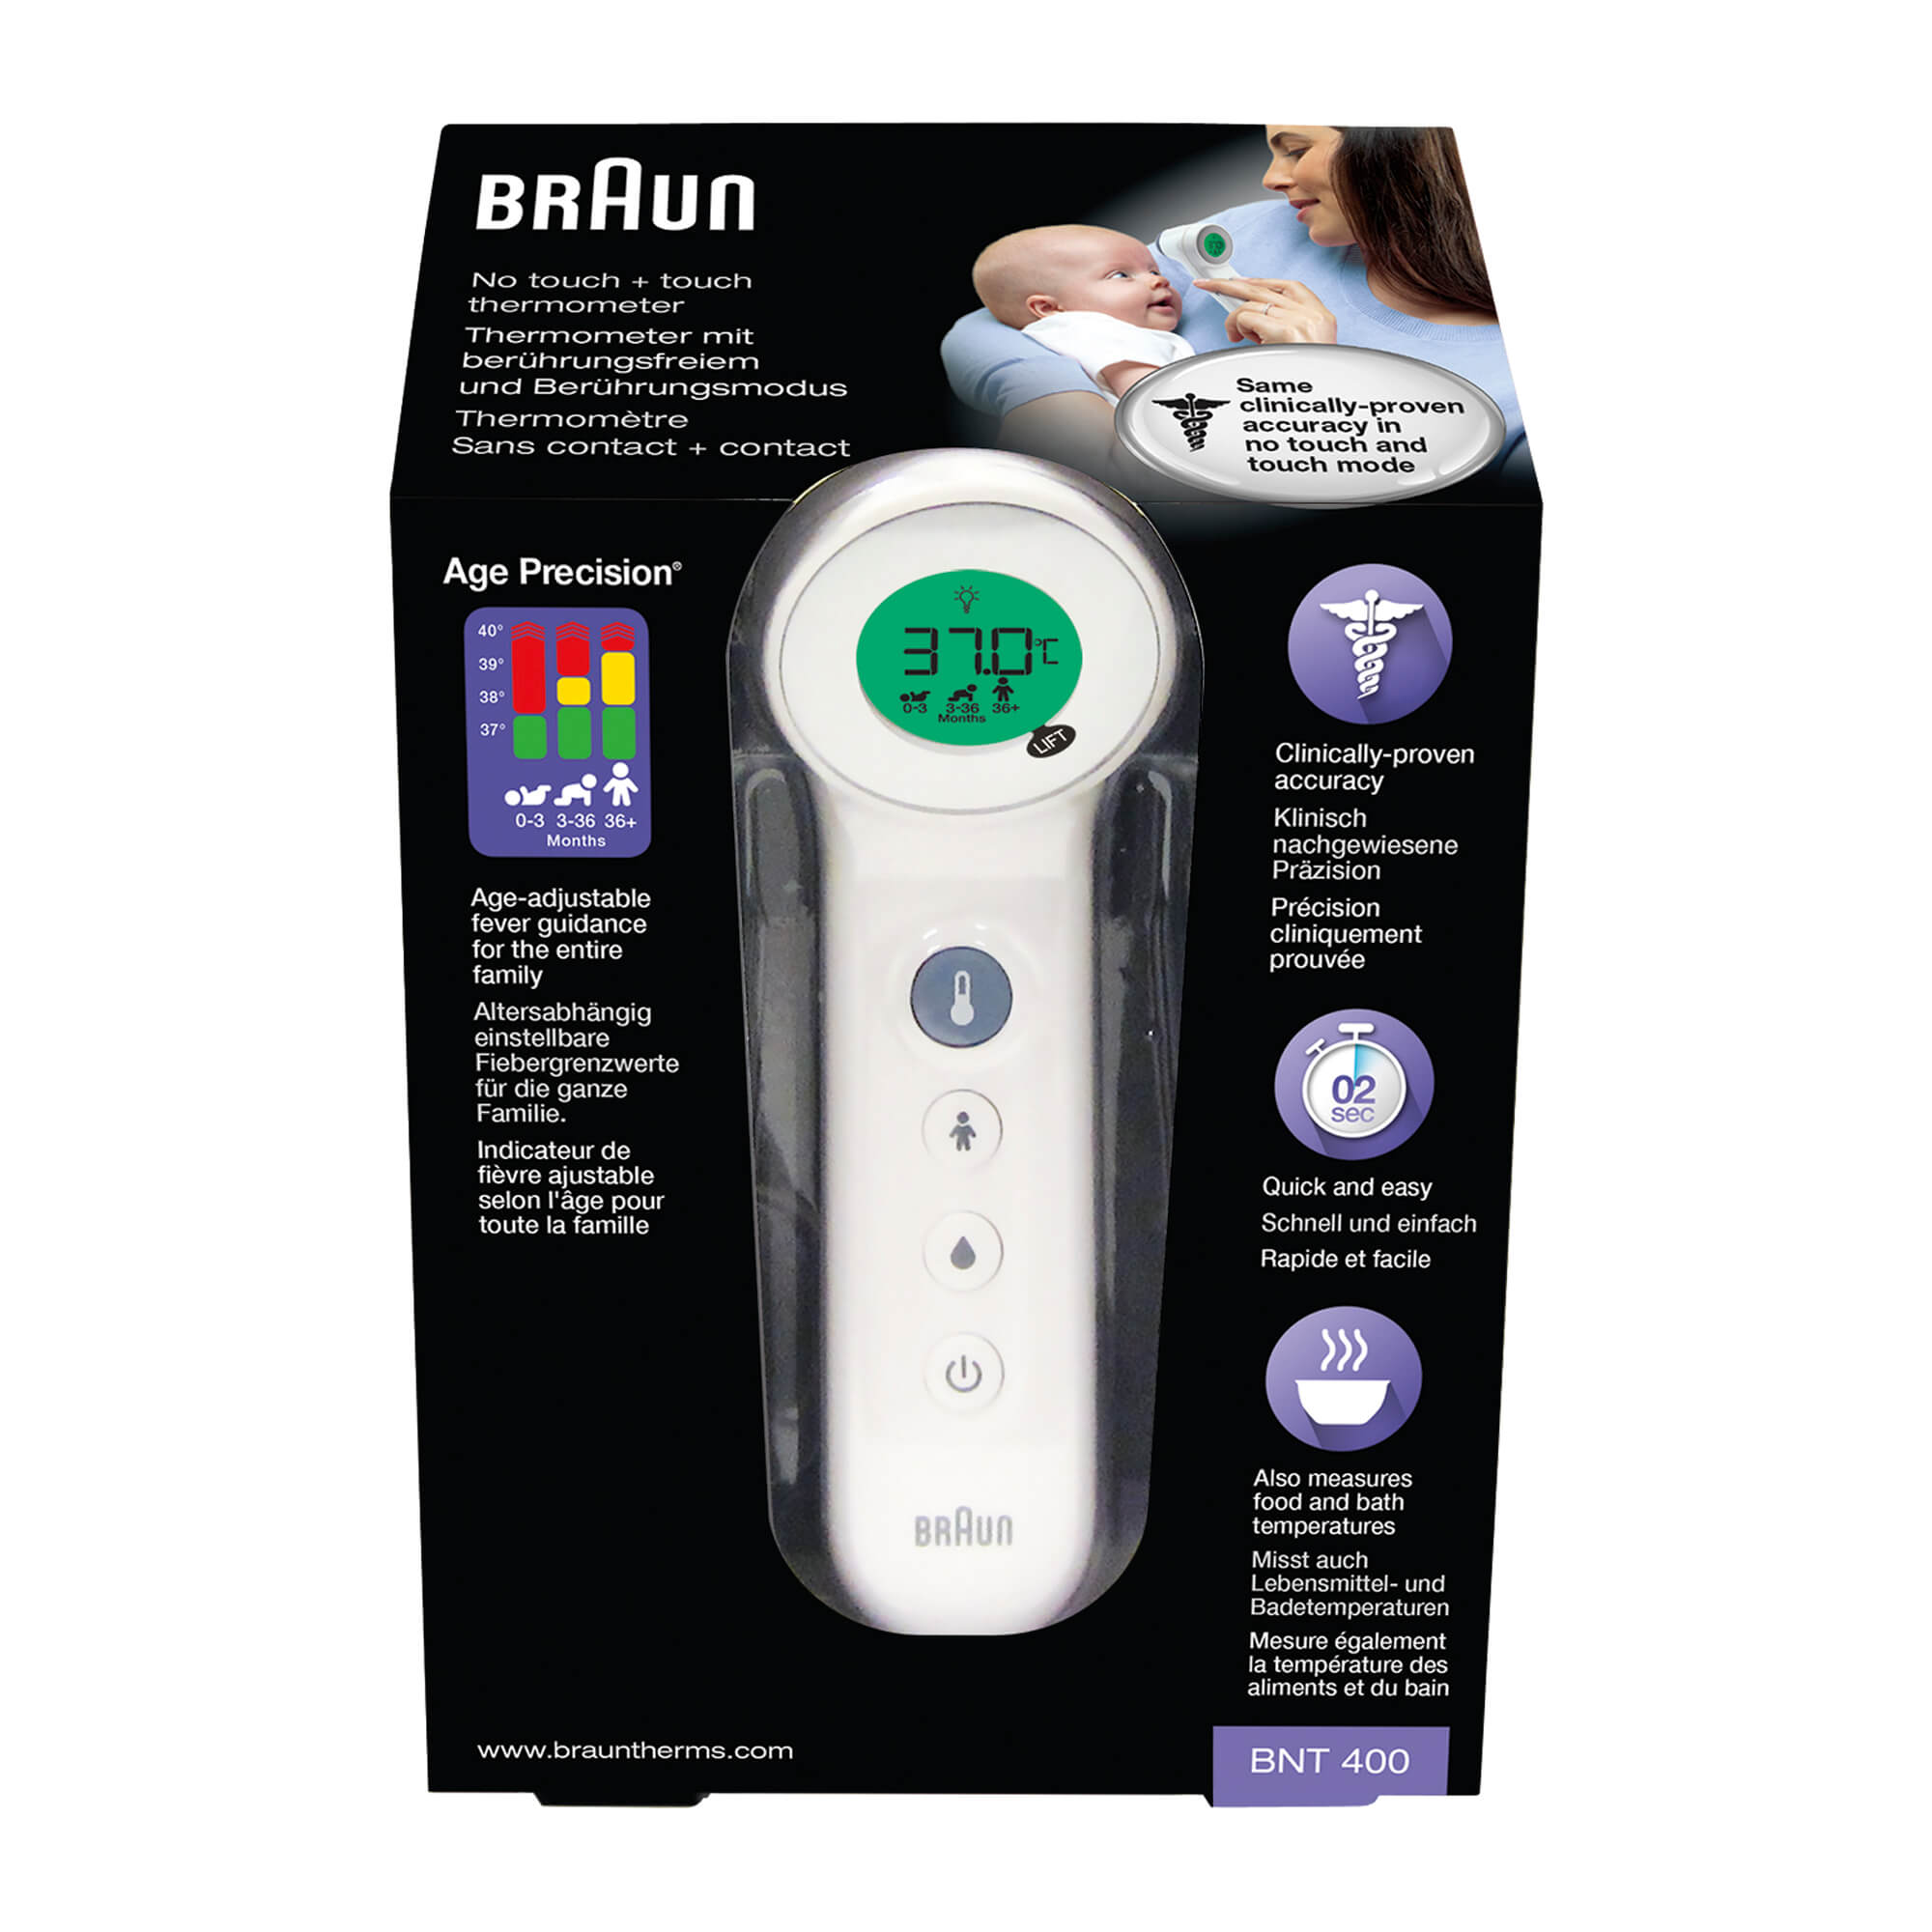 Stirnthermometer, das mit und ohne Berührung die Temperatur misst. Für Säuglinge, Kinder und Erwachsene.